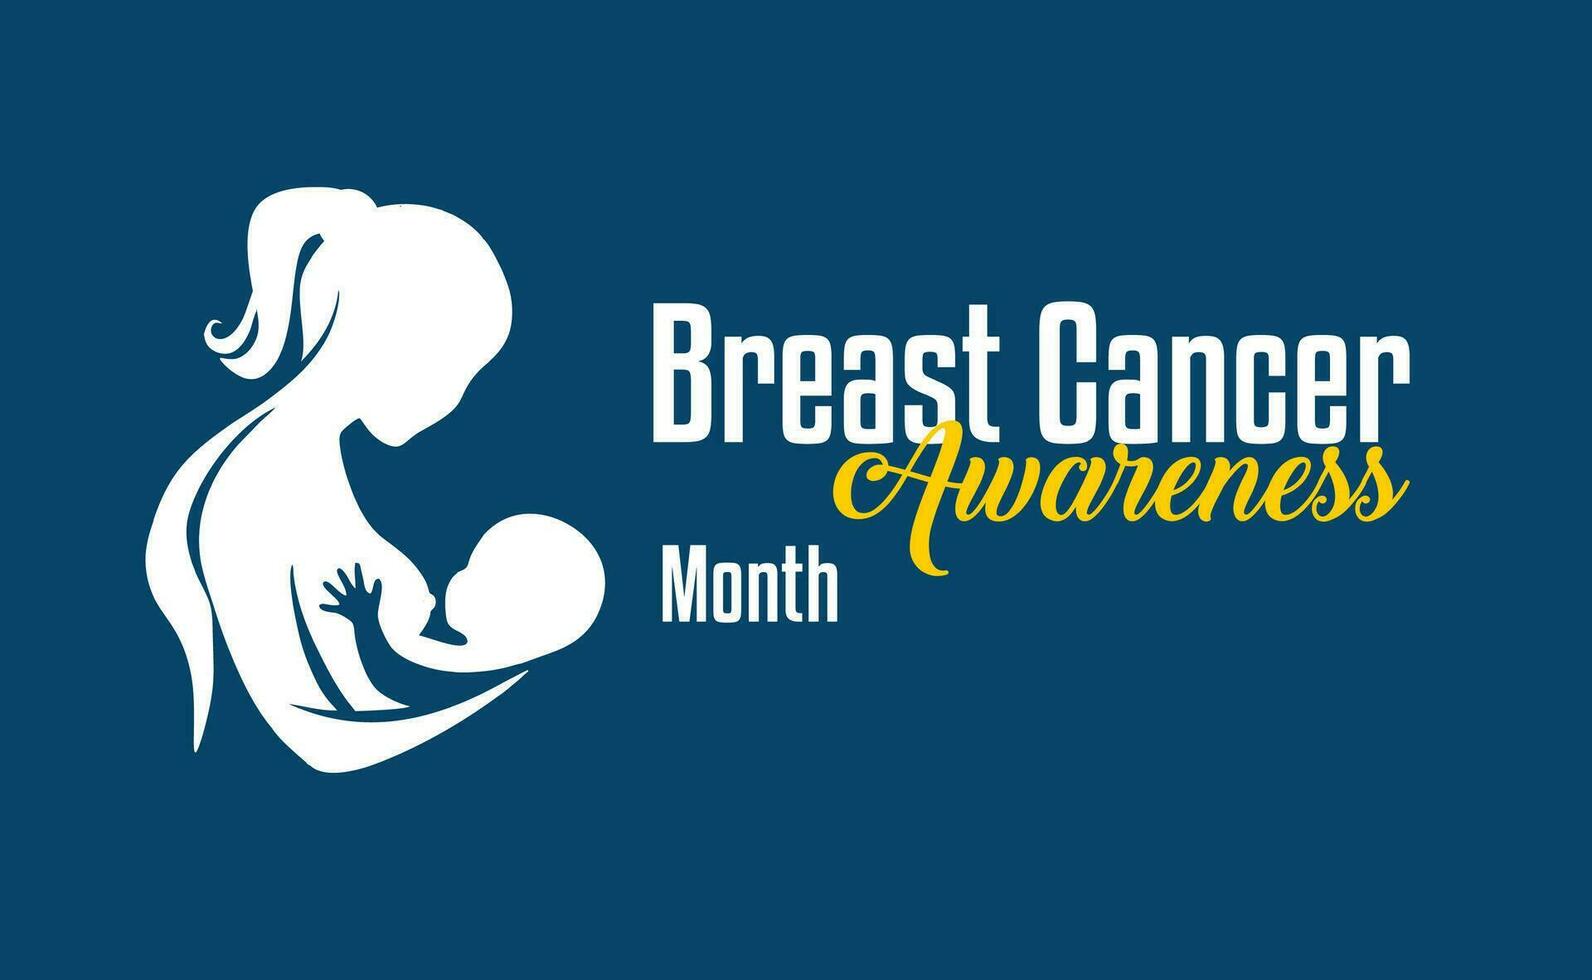 mese di sensibilizzazione sul cancro al seno vettore